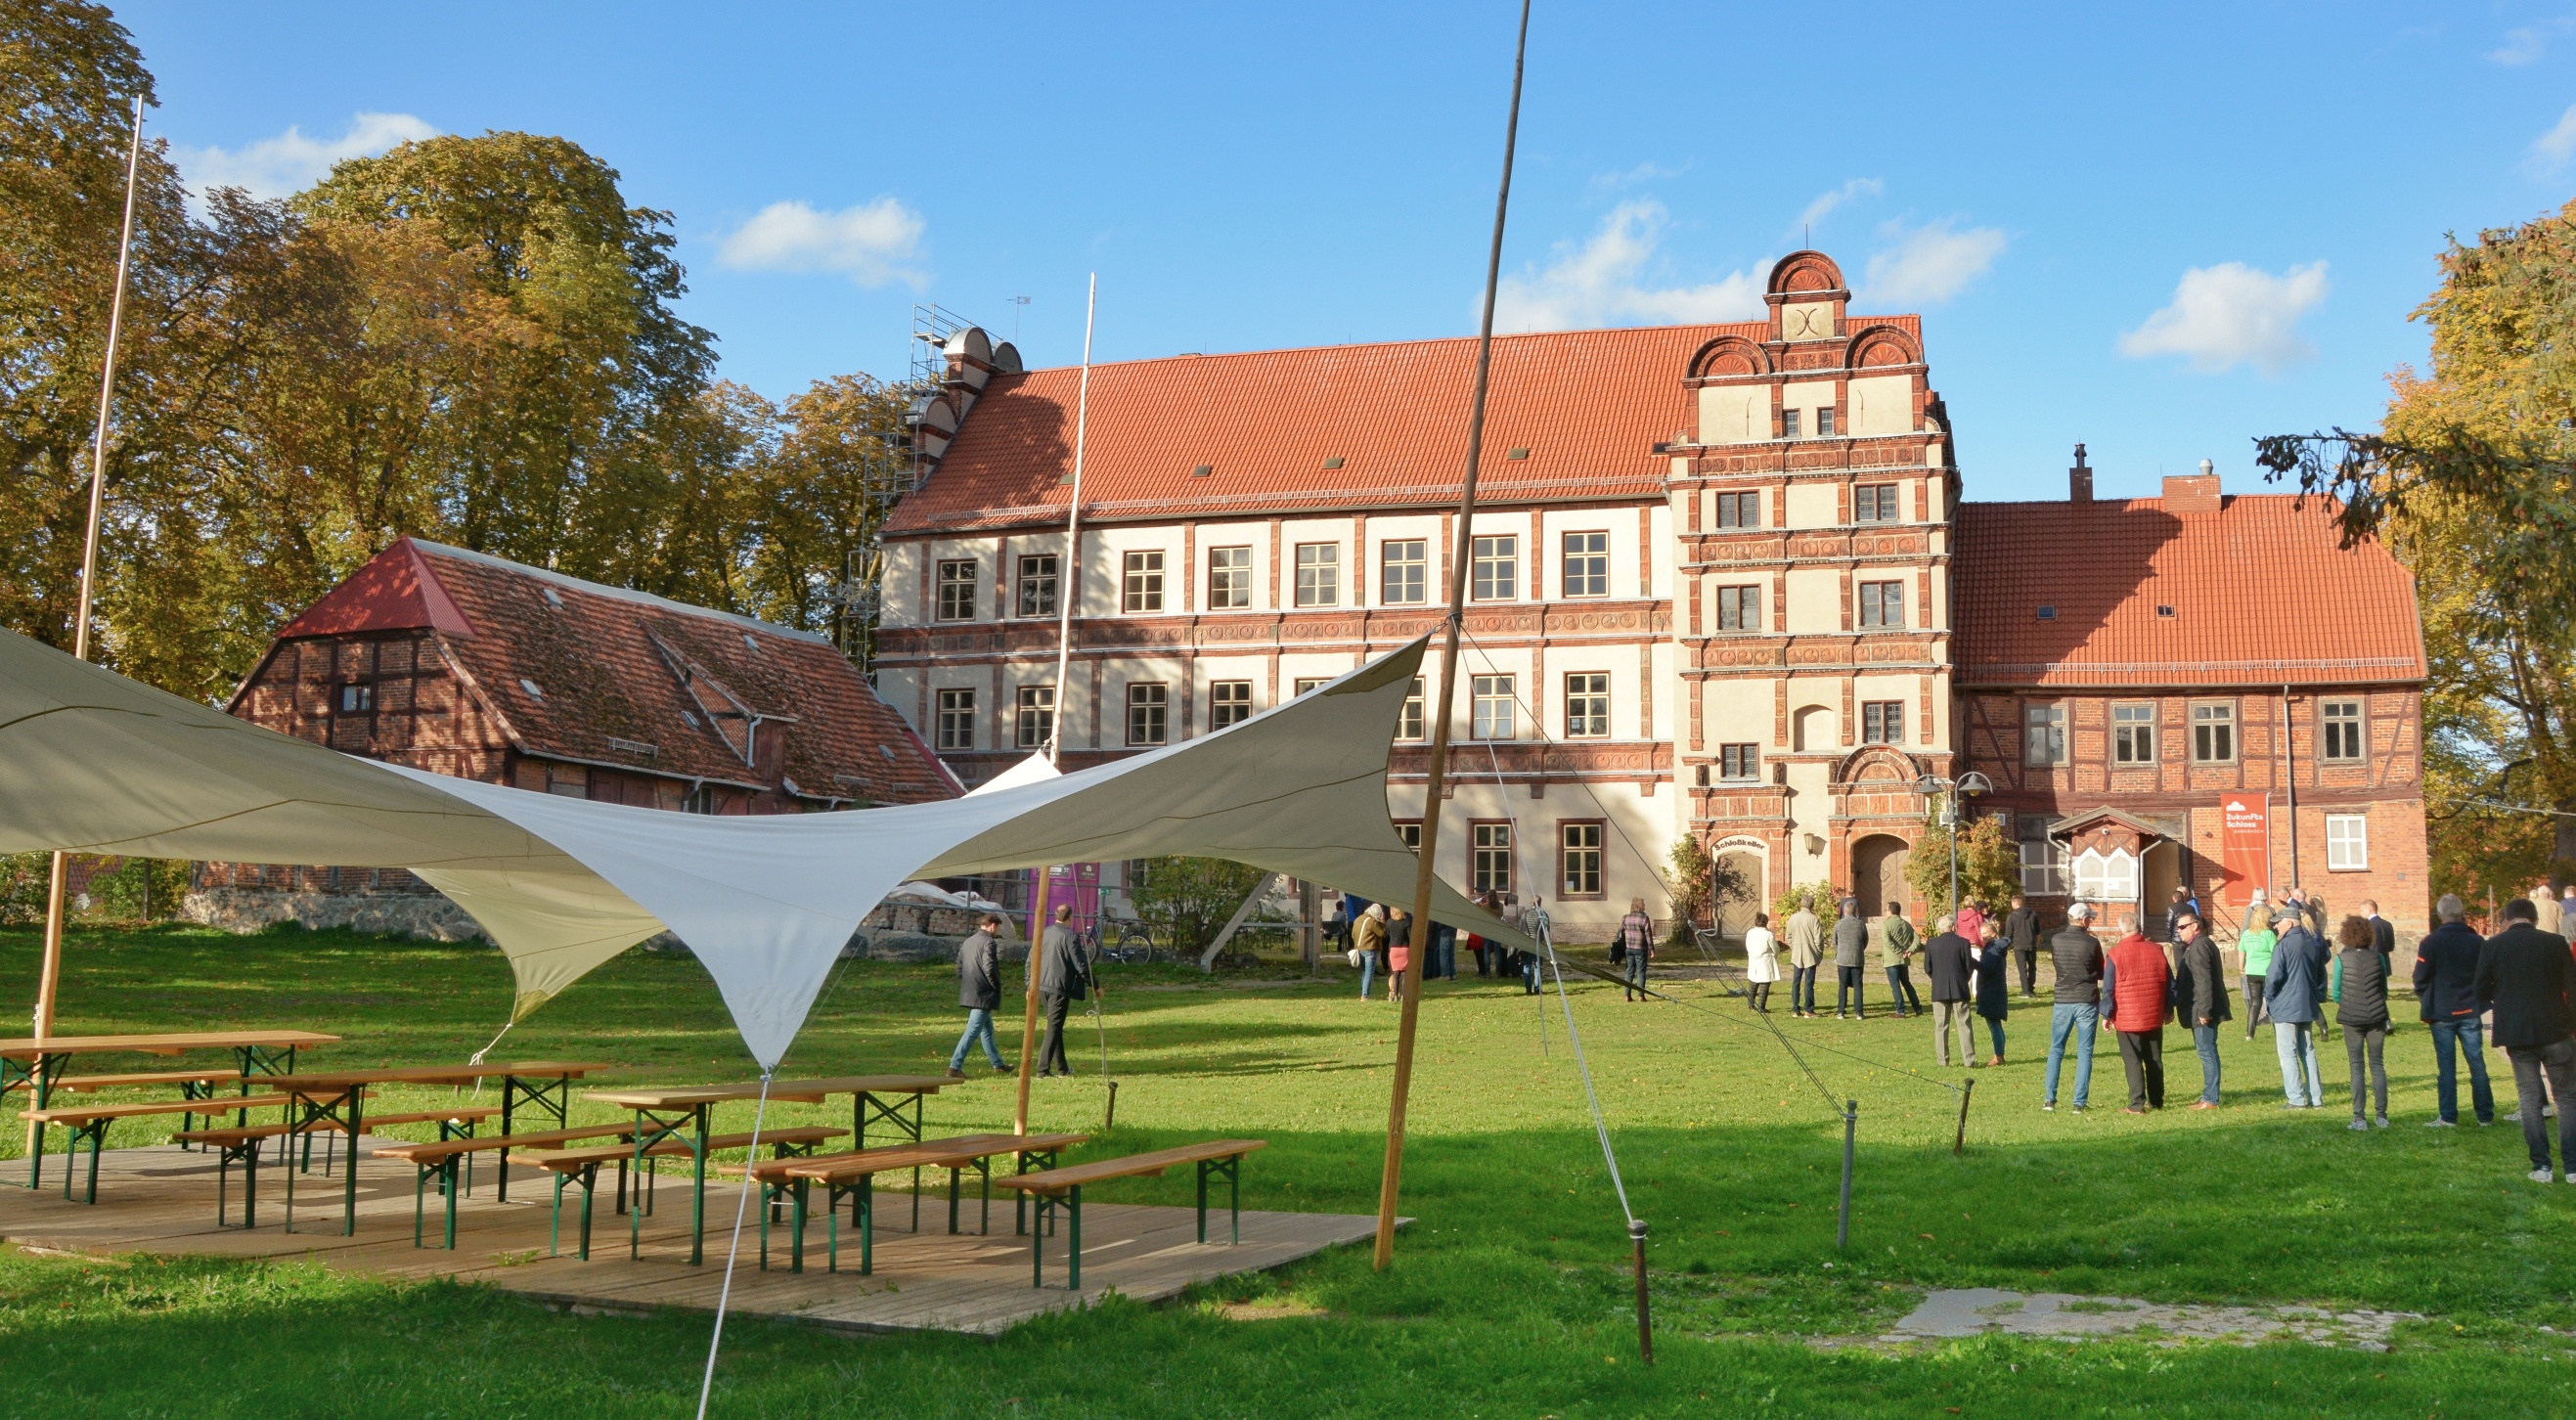 Der Innenhof des Schlosses Gadebusch bei einer Veranstaltung. © Tourismusverband Mecklenburg-Schwerin e.V.